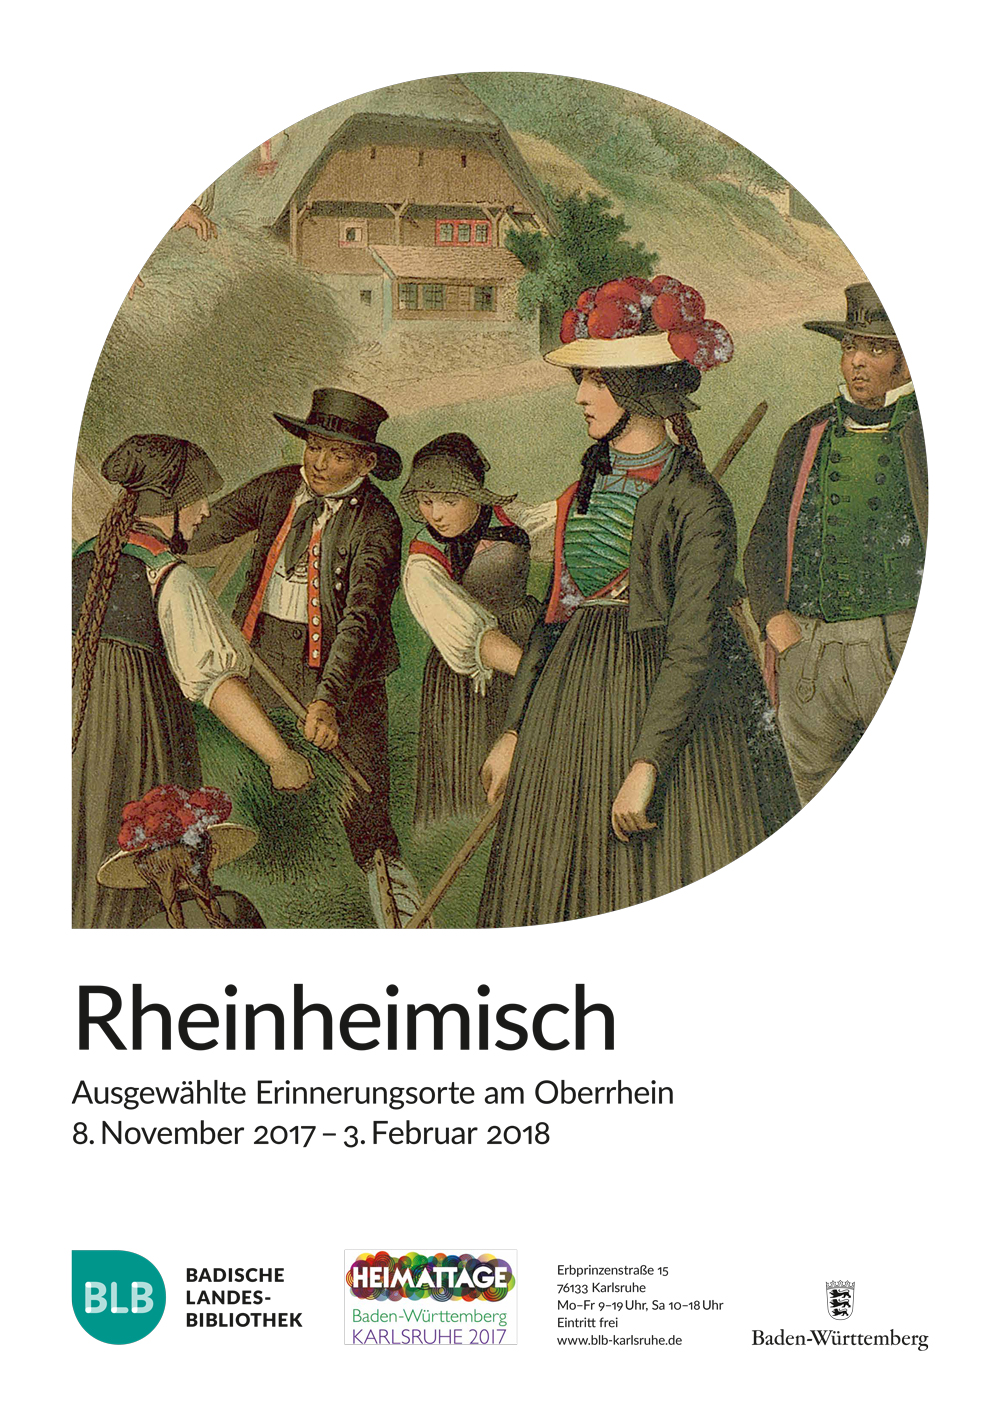 Zu sehen sind drei Frauen und zwei Männer in traditioneller Schwarzwaldtracht. Sie gehen einer landwirtschaftlichen Tätigkeit nach. Im Hintergrund ist ein typischer Schwarzwaldhof zu sehen. 